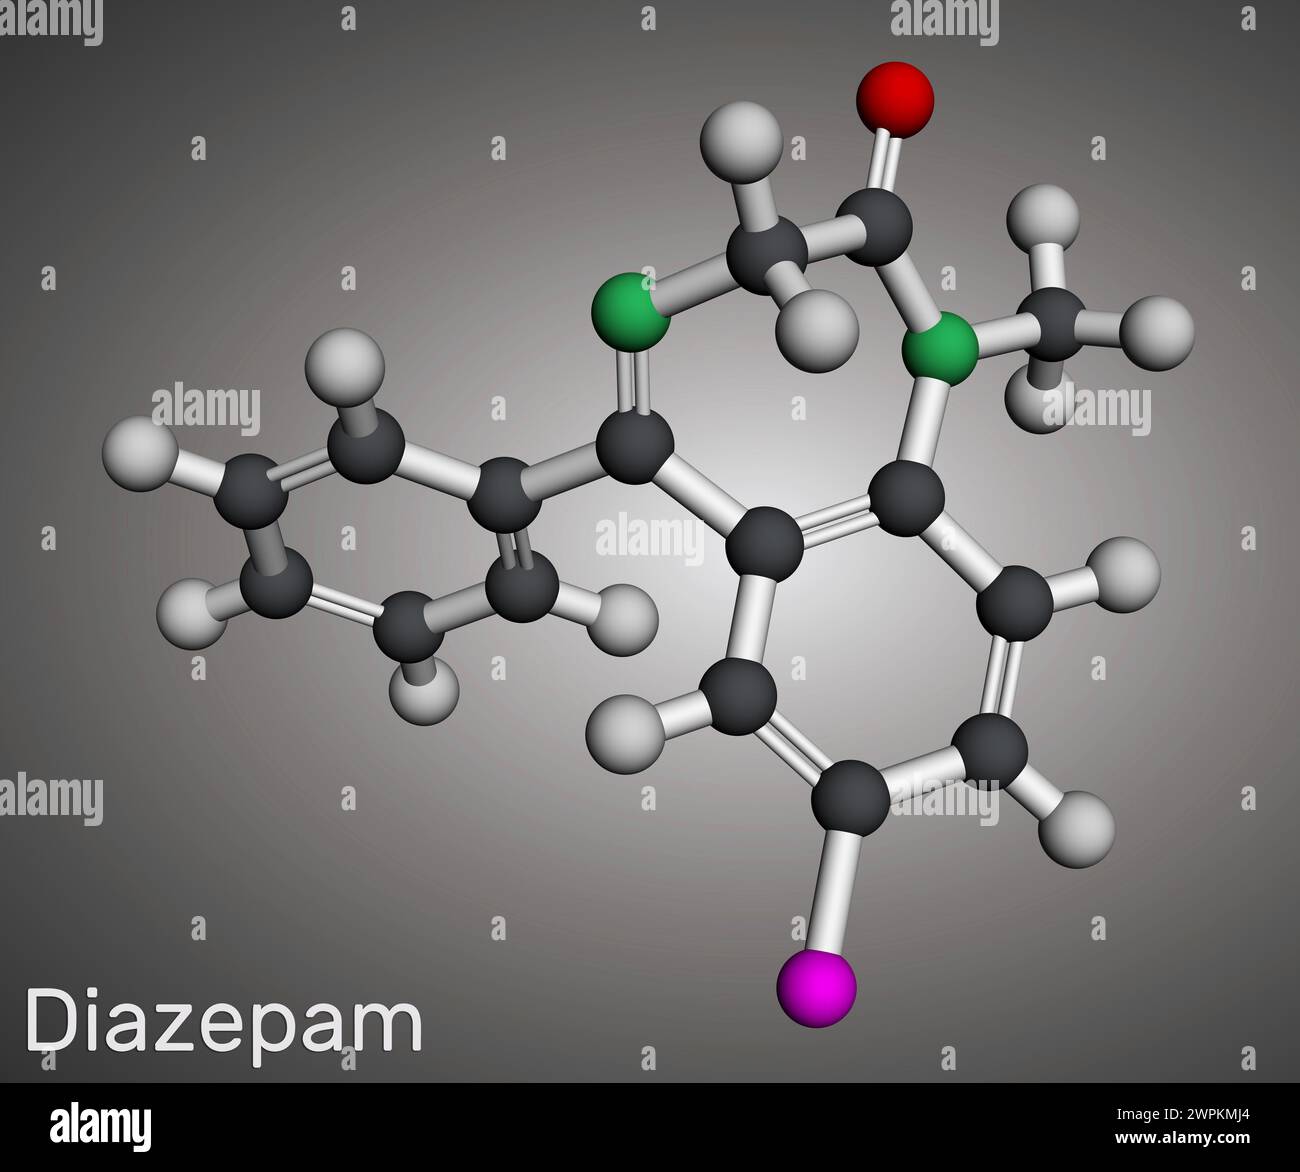 Diazepam-Arzneimittelmolekül. Es ist langwirksames Benzodiazepin, das zur Behandlung von Panikstörungen angewendet wird. Molekulares Modell. 3D-Rendering. Abbildung Stockfoto